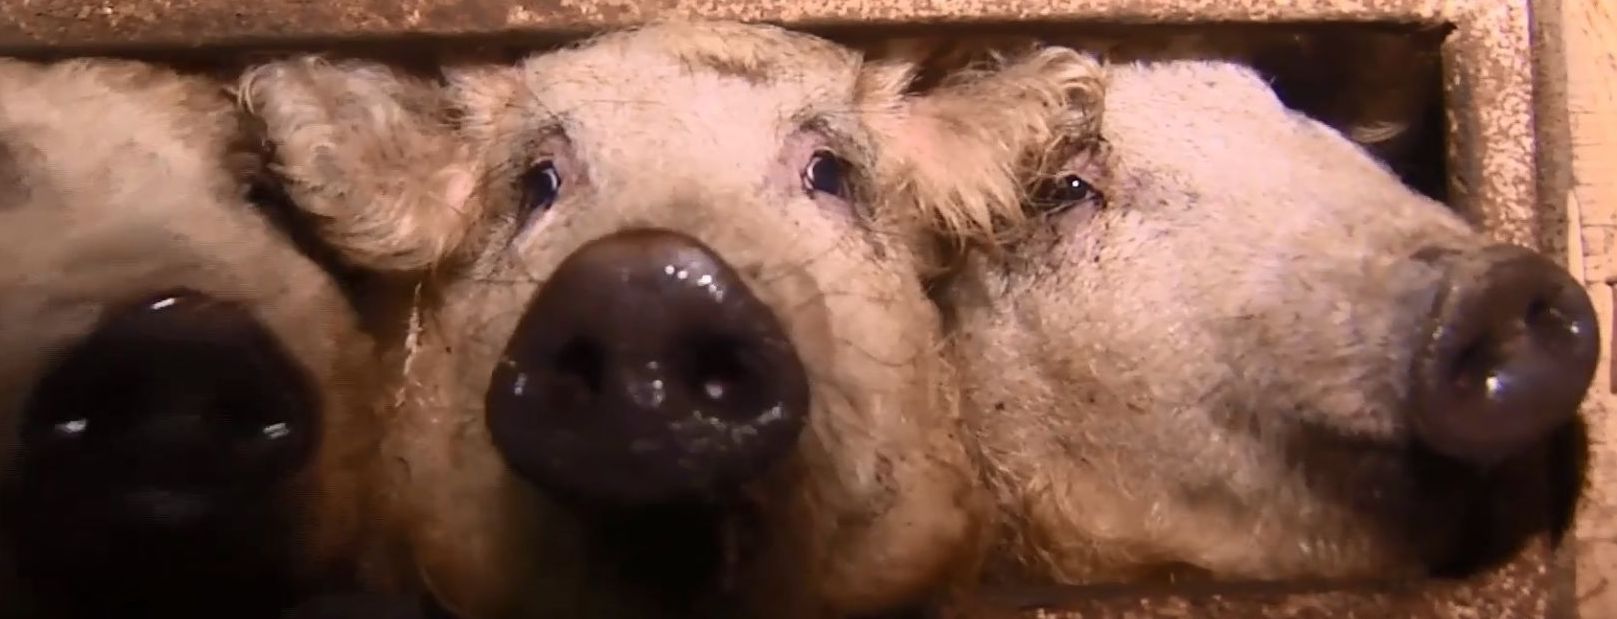 В Україні виникла мода на розведення волохатих "бараноподібних" свиней